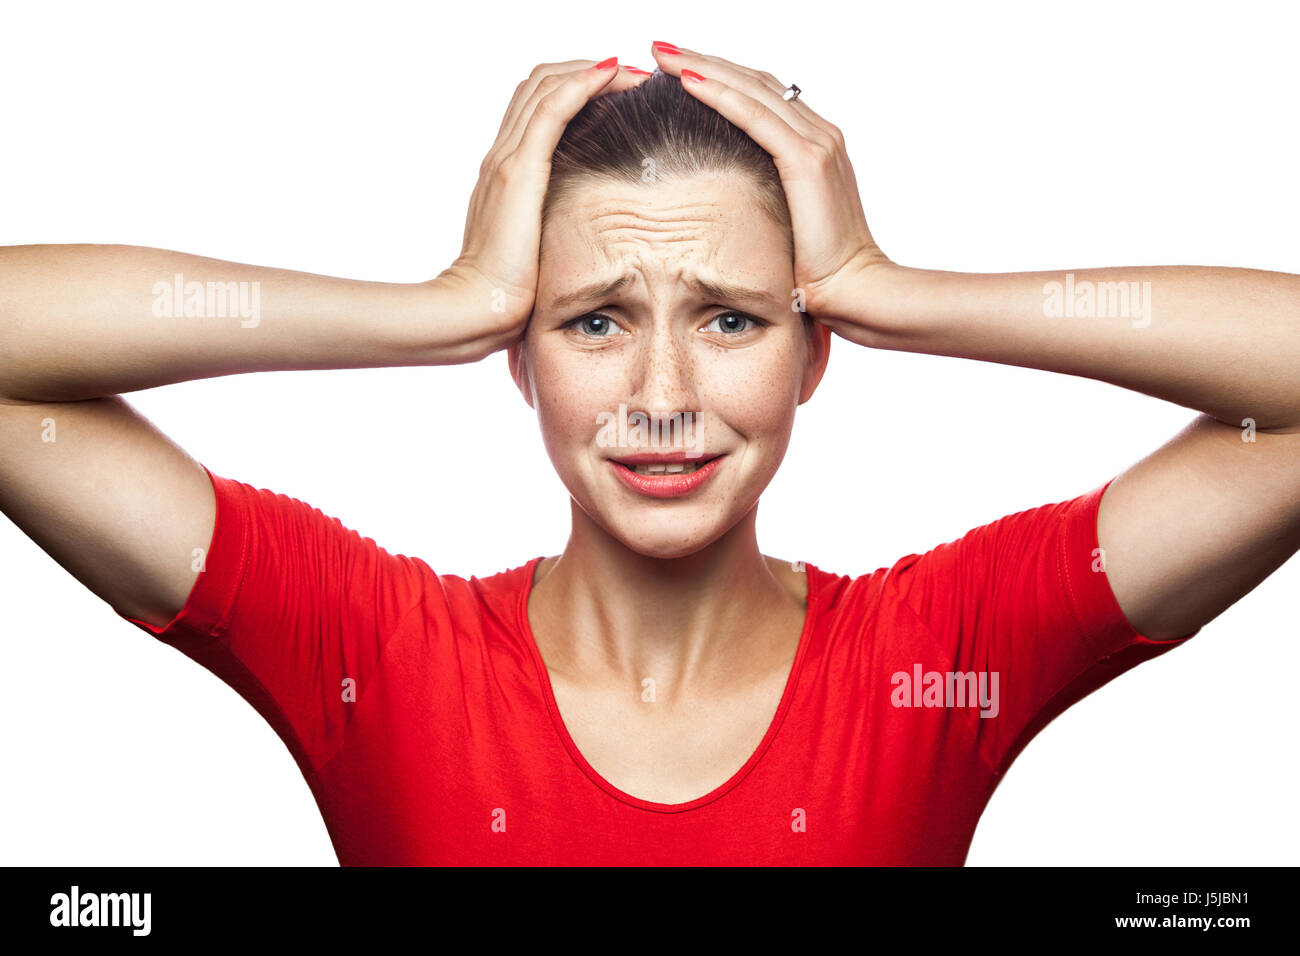 Porträt der traurige unglückliche Frau im roten T-shirt mit Sommersprossen. Studio gedreht. isoliert auf weißem Hintergrund. Stockfoto